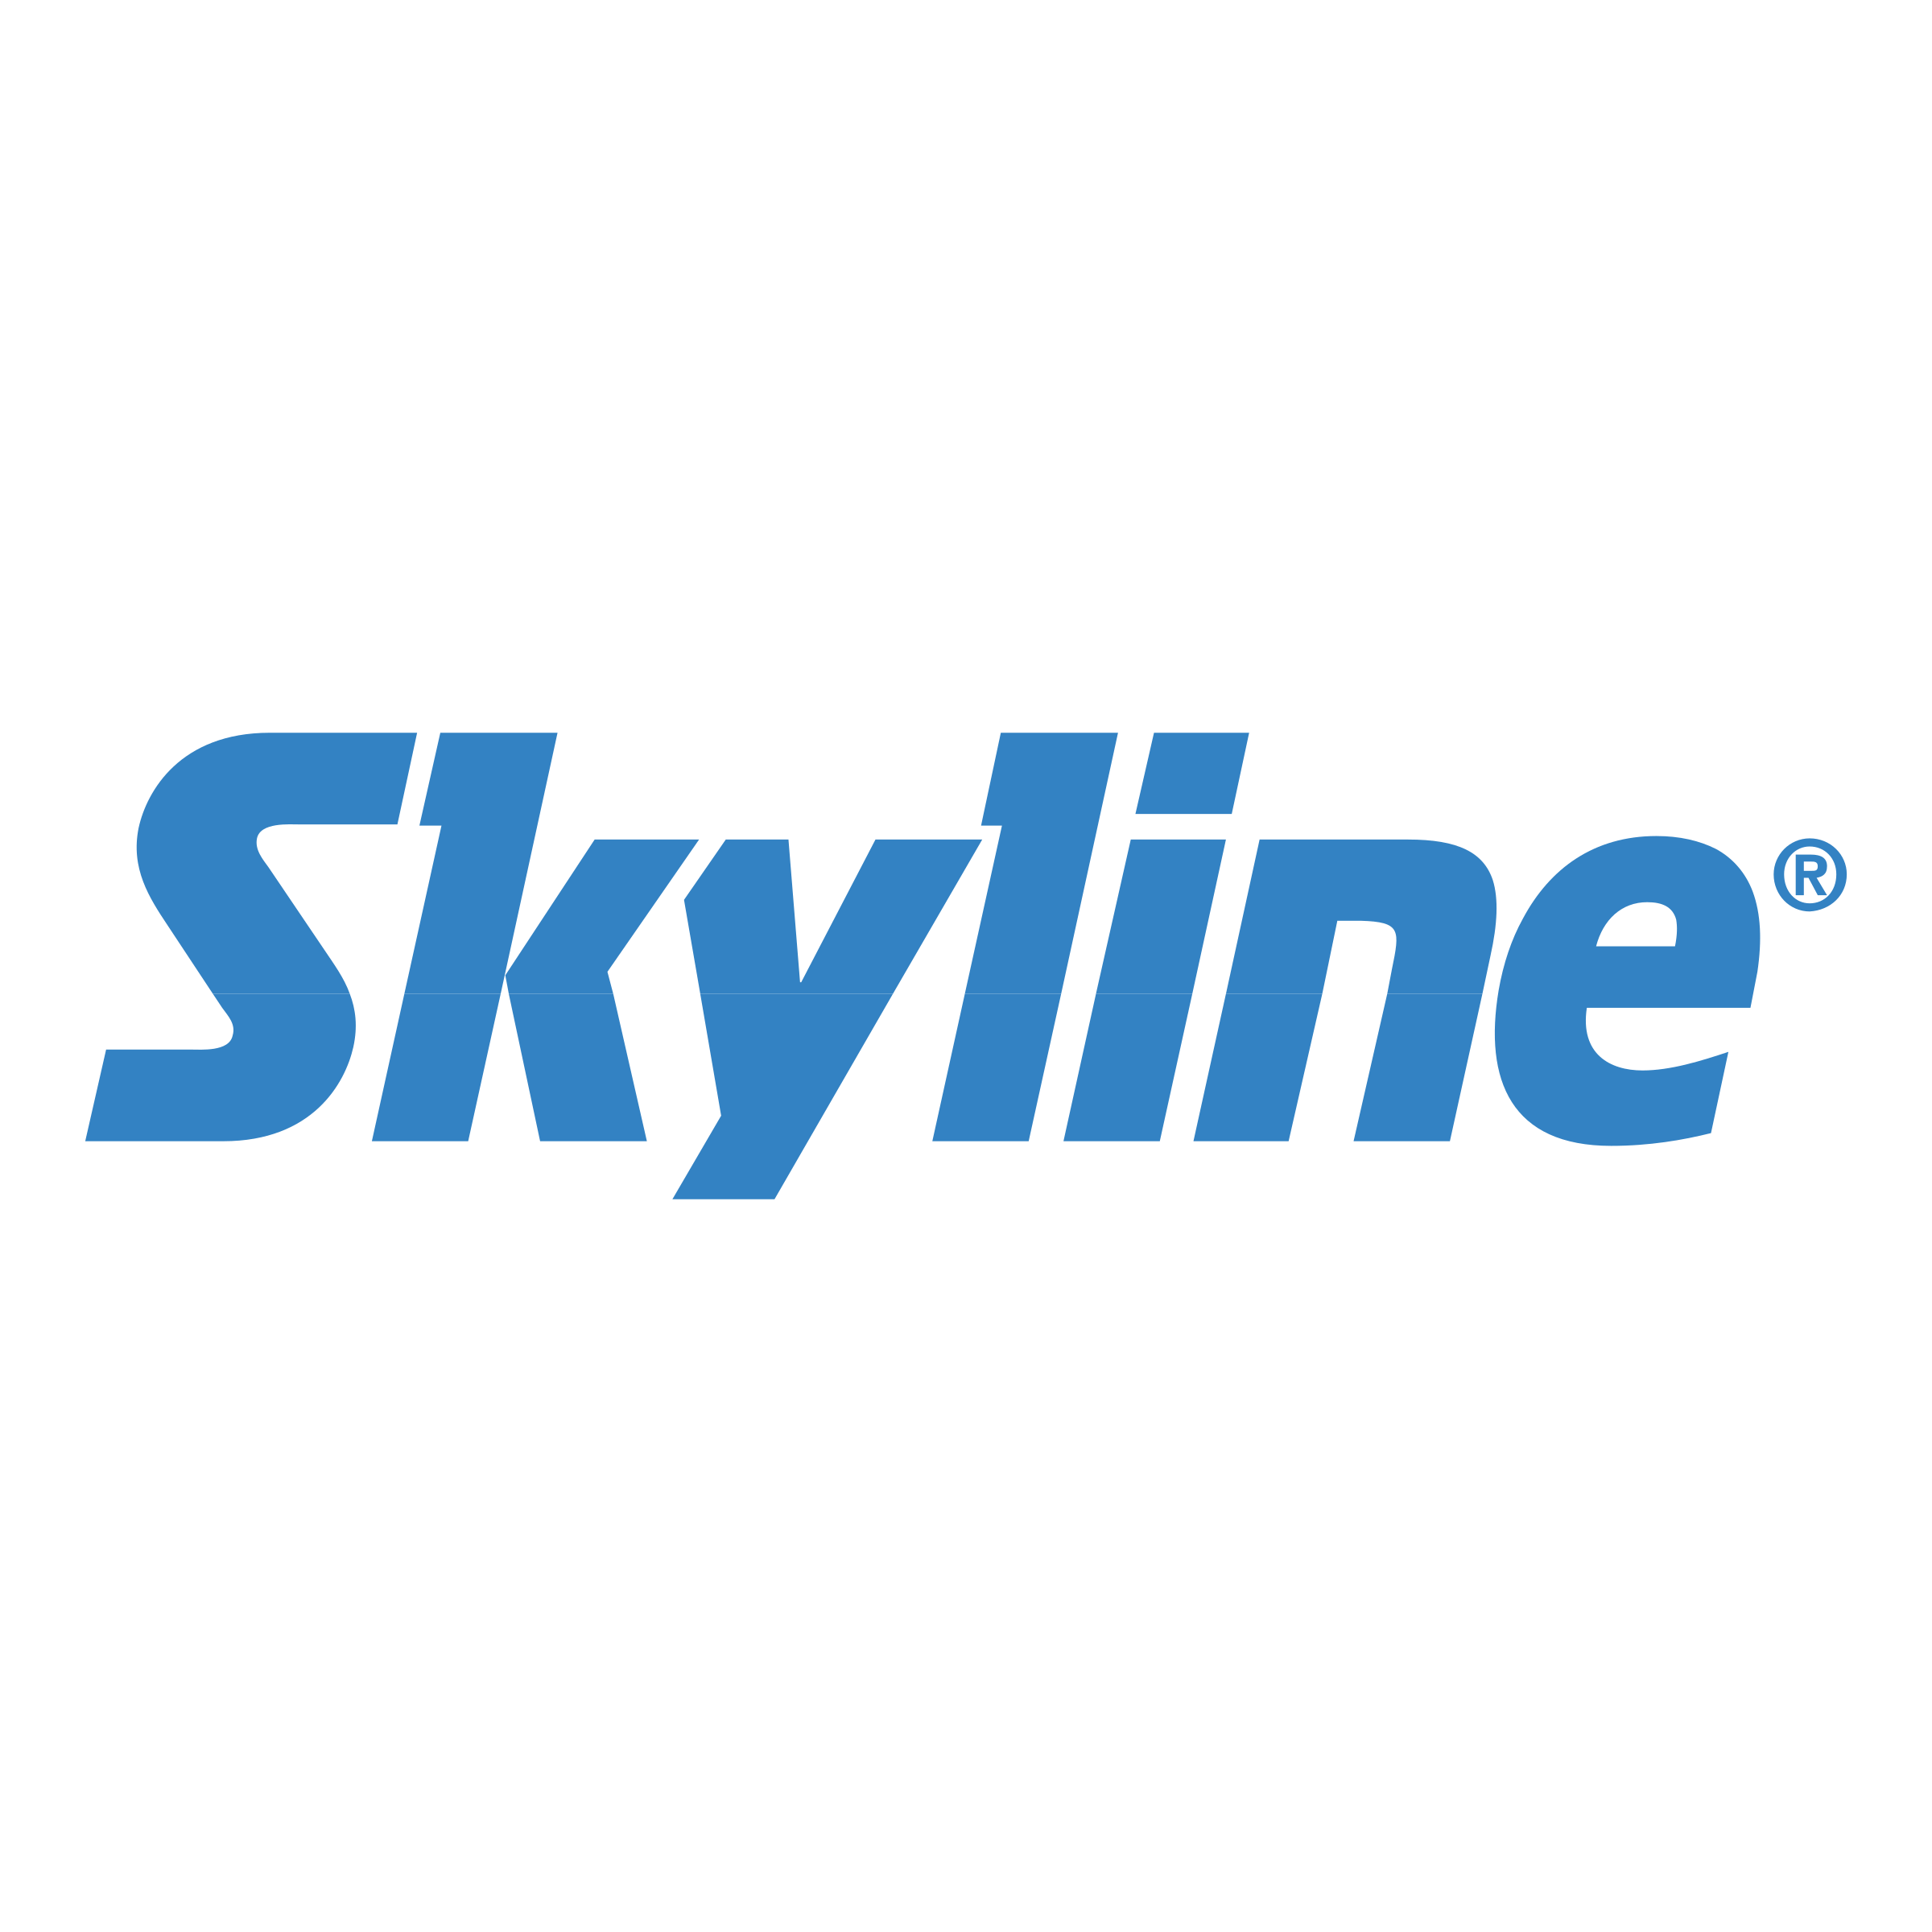 Skyline Logo - Skyline Logo PNG Transparent & SVG Vector